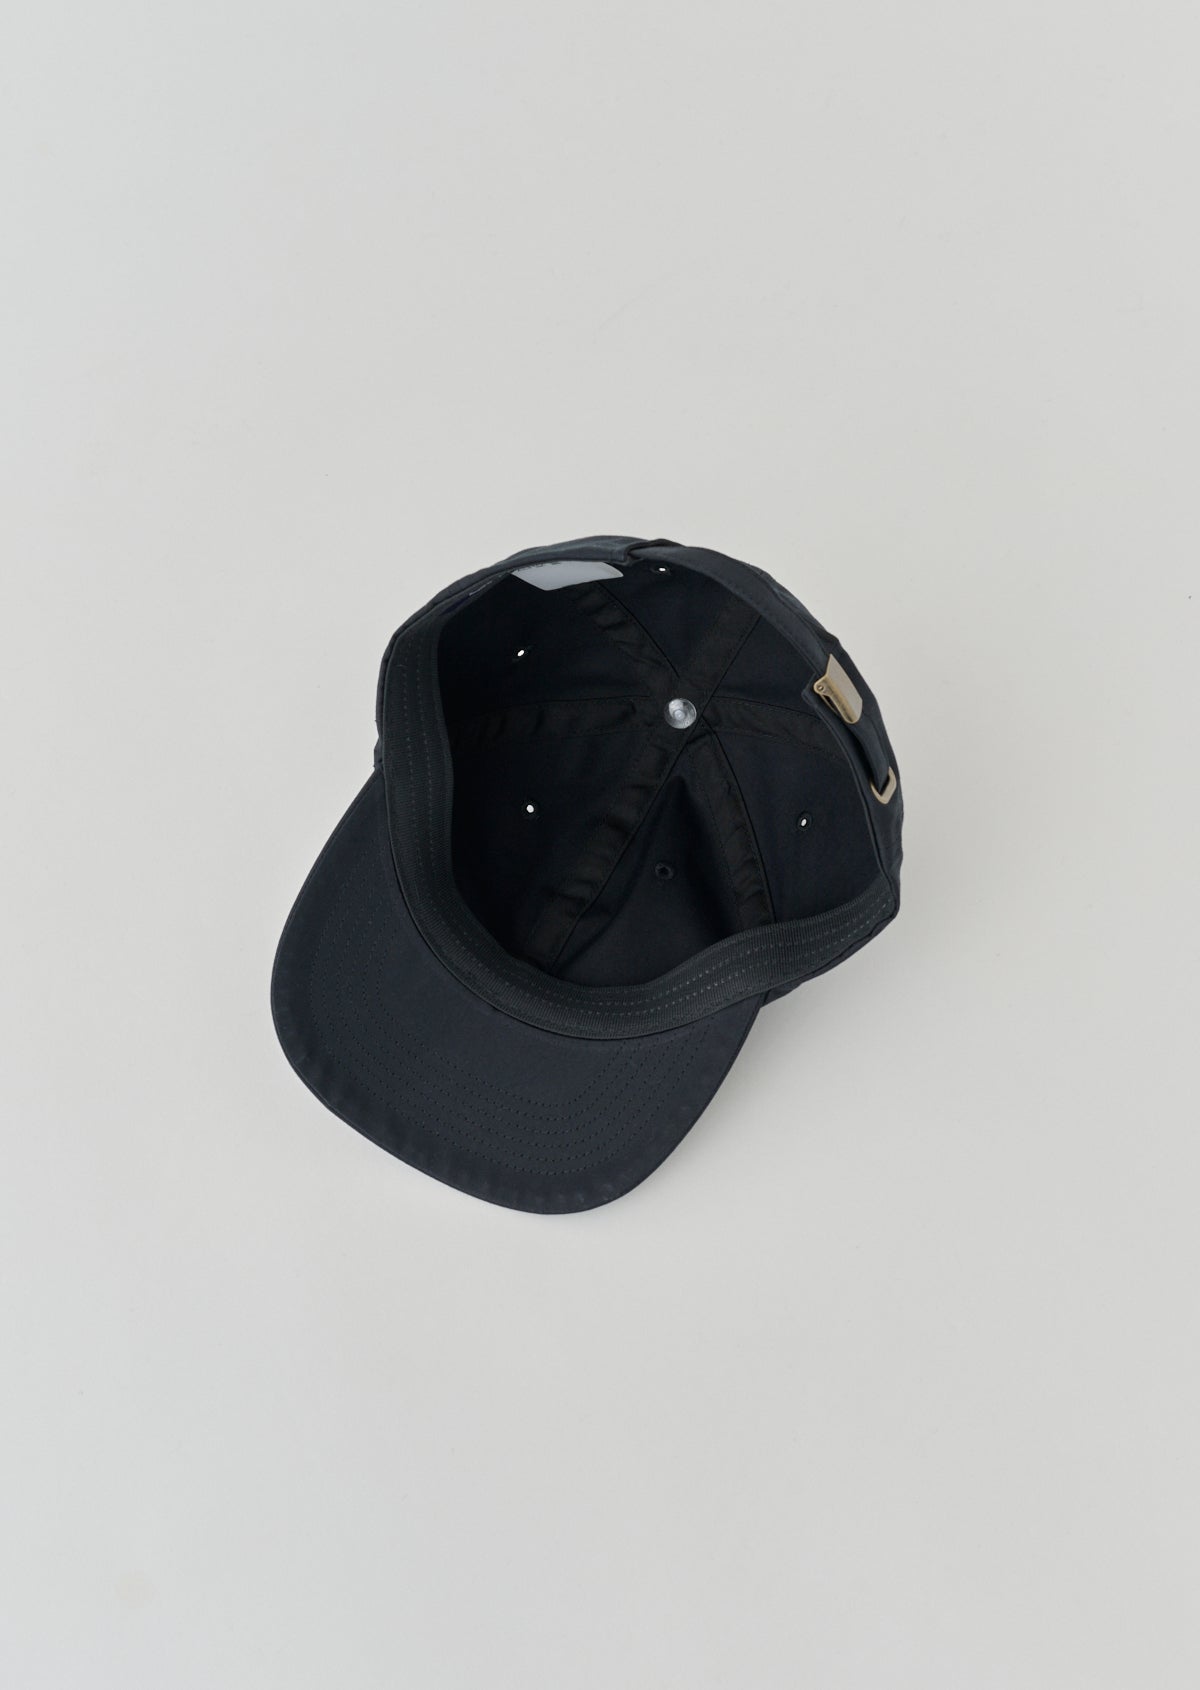 CAP BLACK 8033-1501